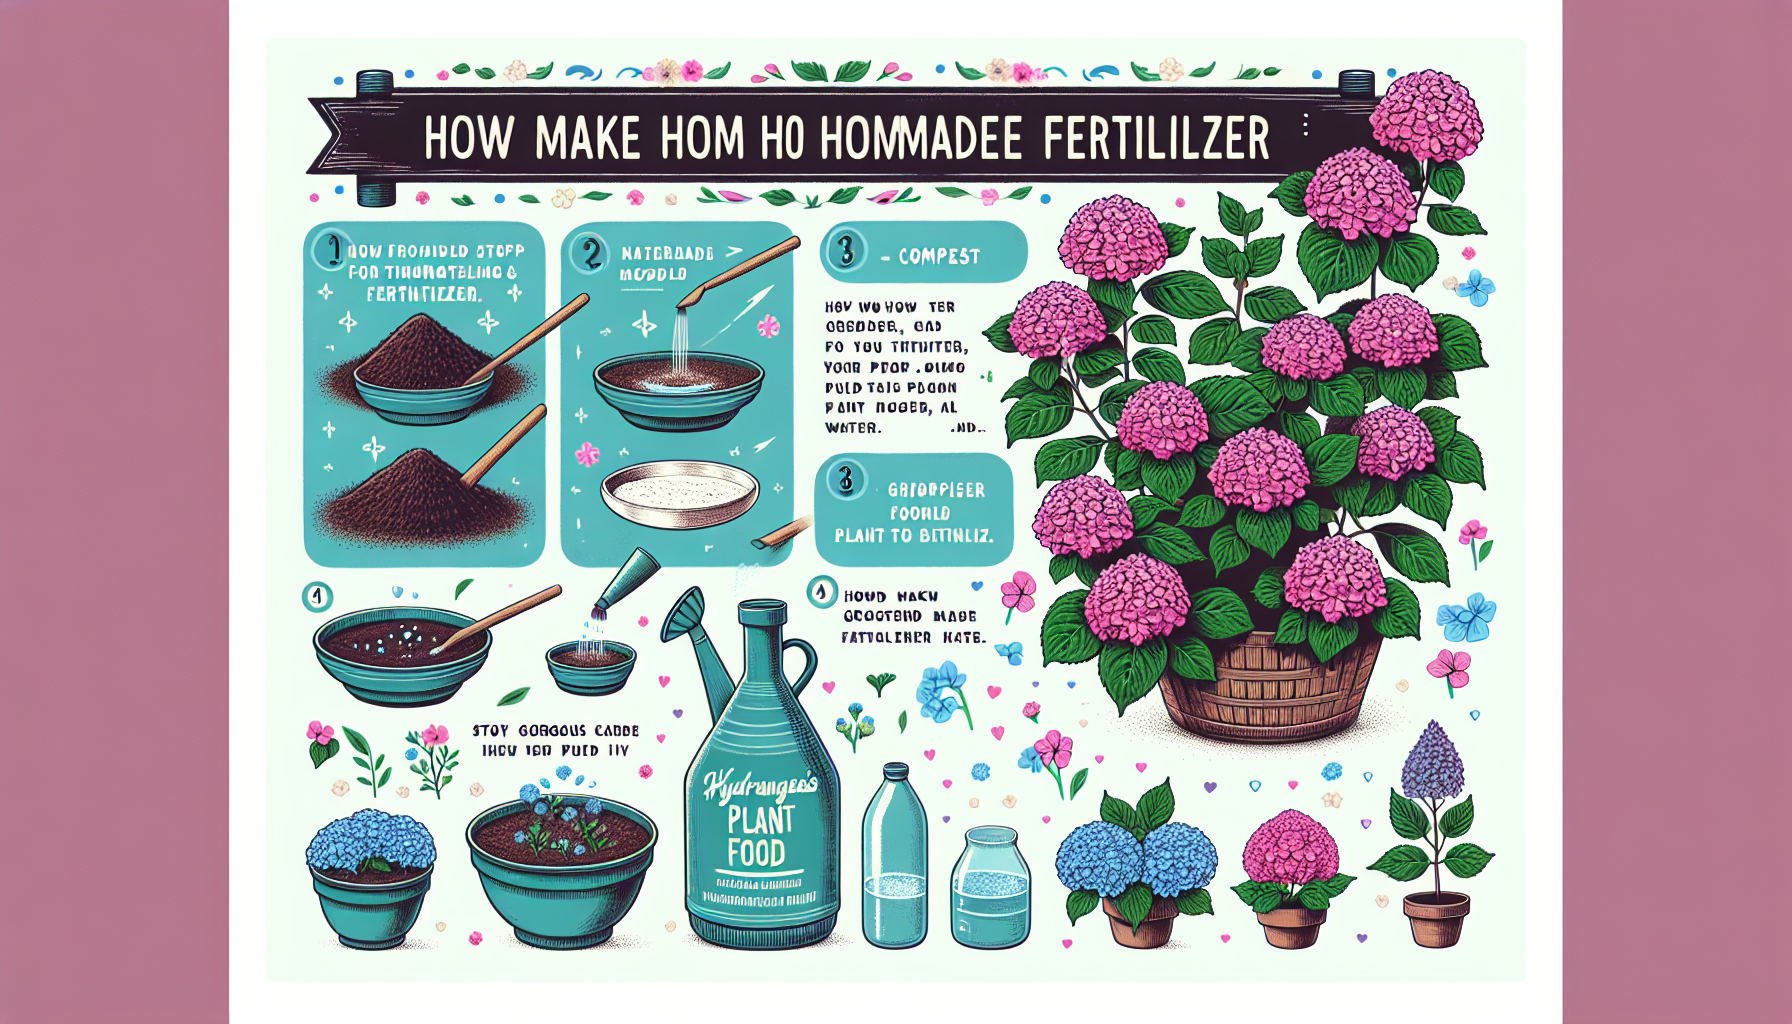 découvrez comment fabriquer un engrais maison pour des fleurs d'hortensia plus abondantes, belles et résistantes. suivez nos conseils pour sublimer vos hortensias.